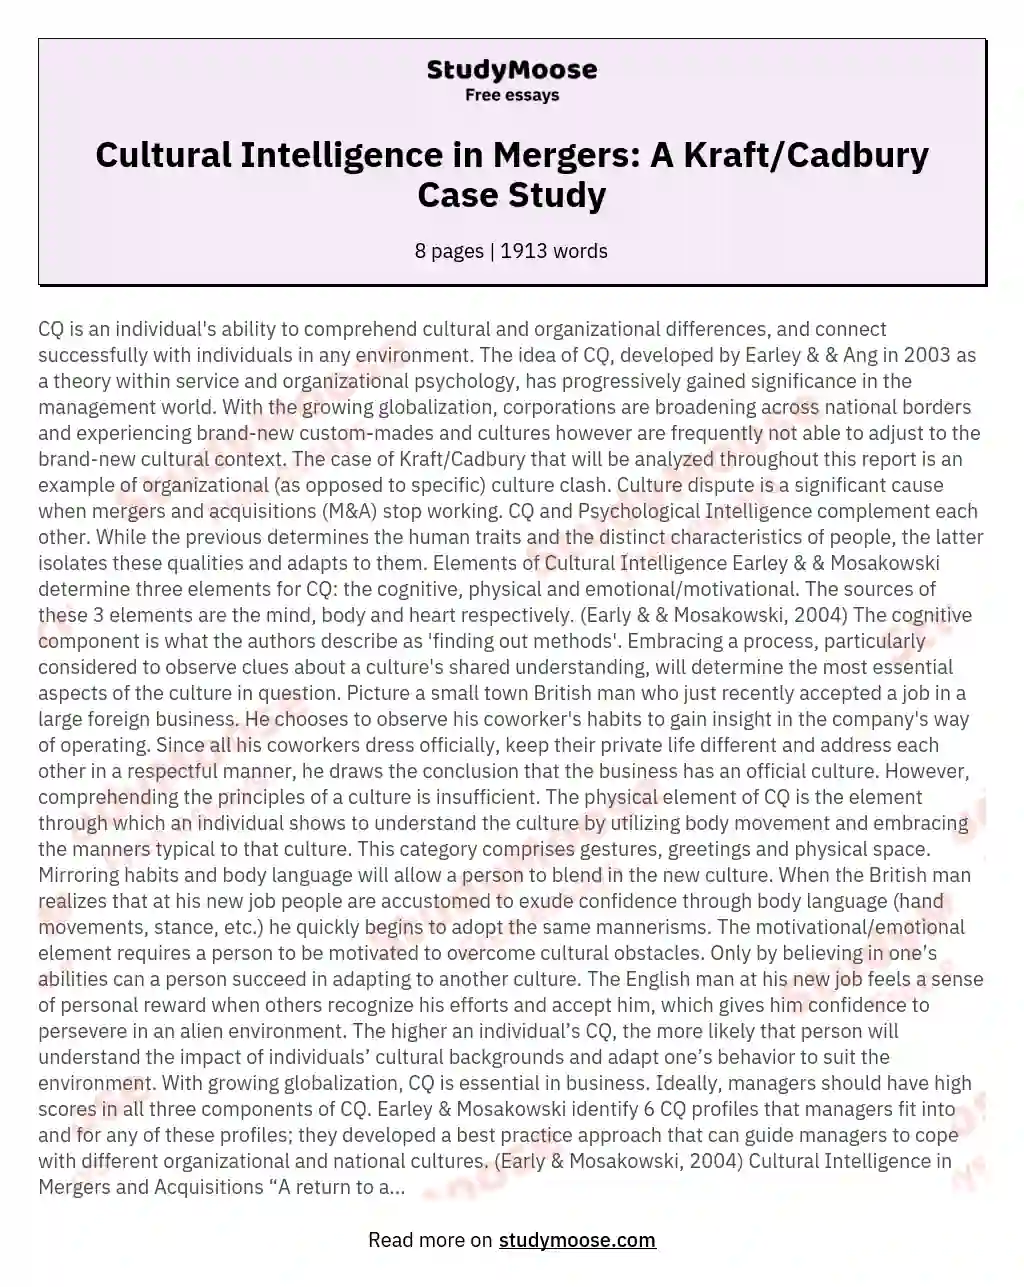 Cultural Intelligence in Mergers: A Kraft/Cadbury Case Study essay